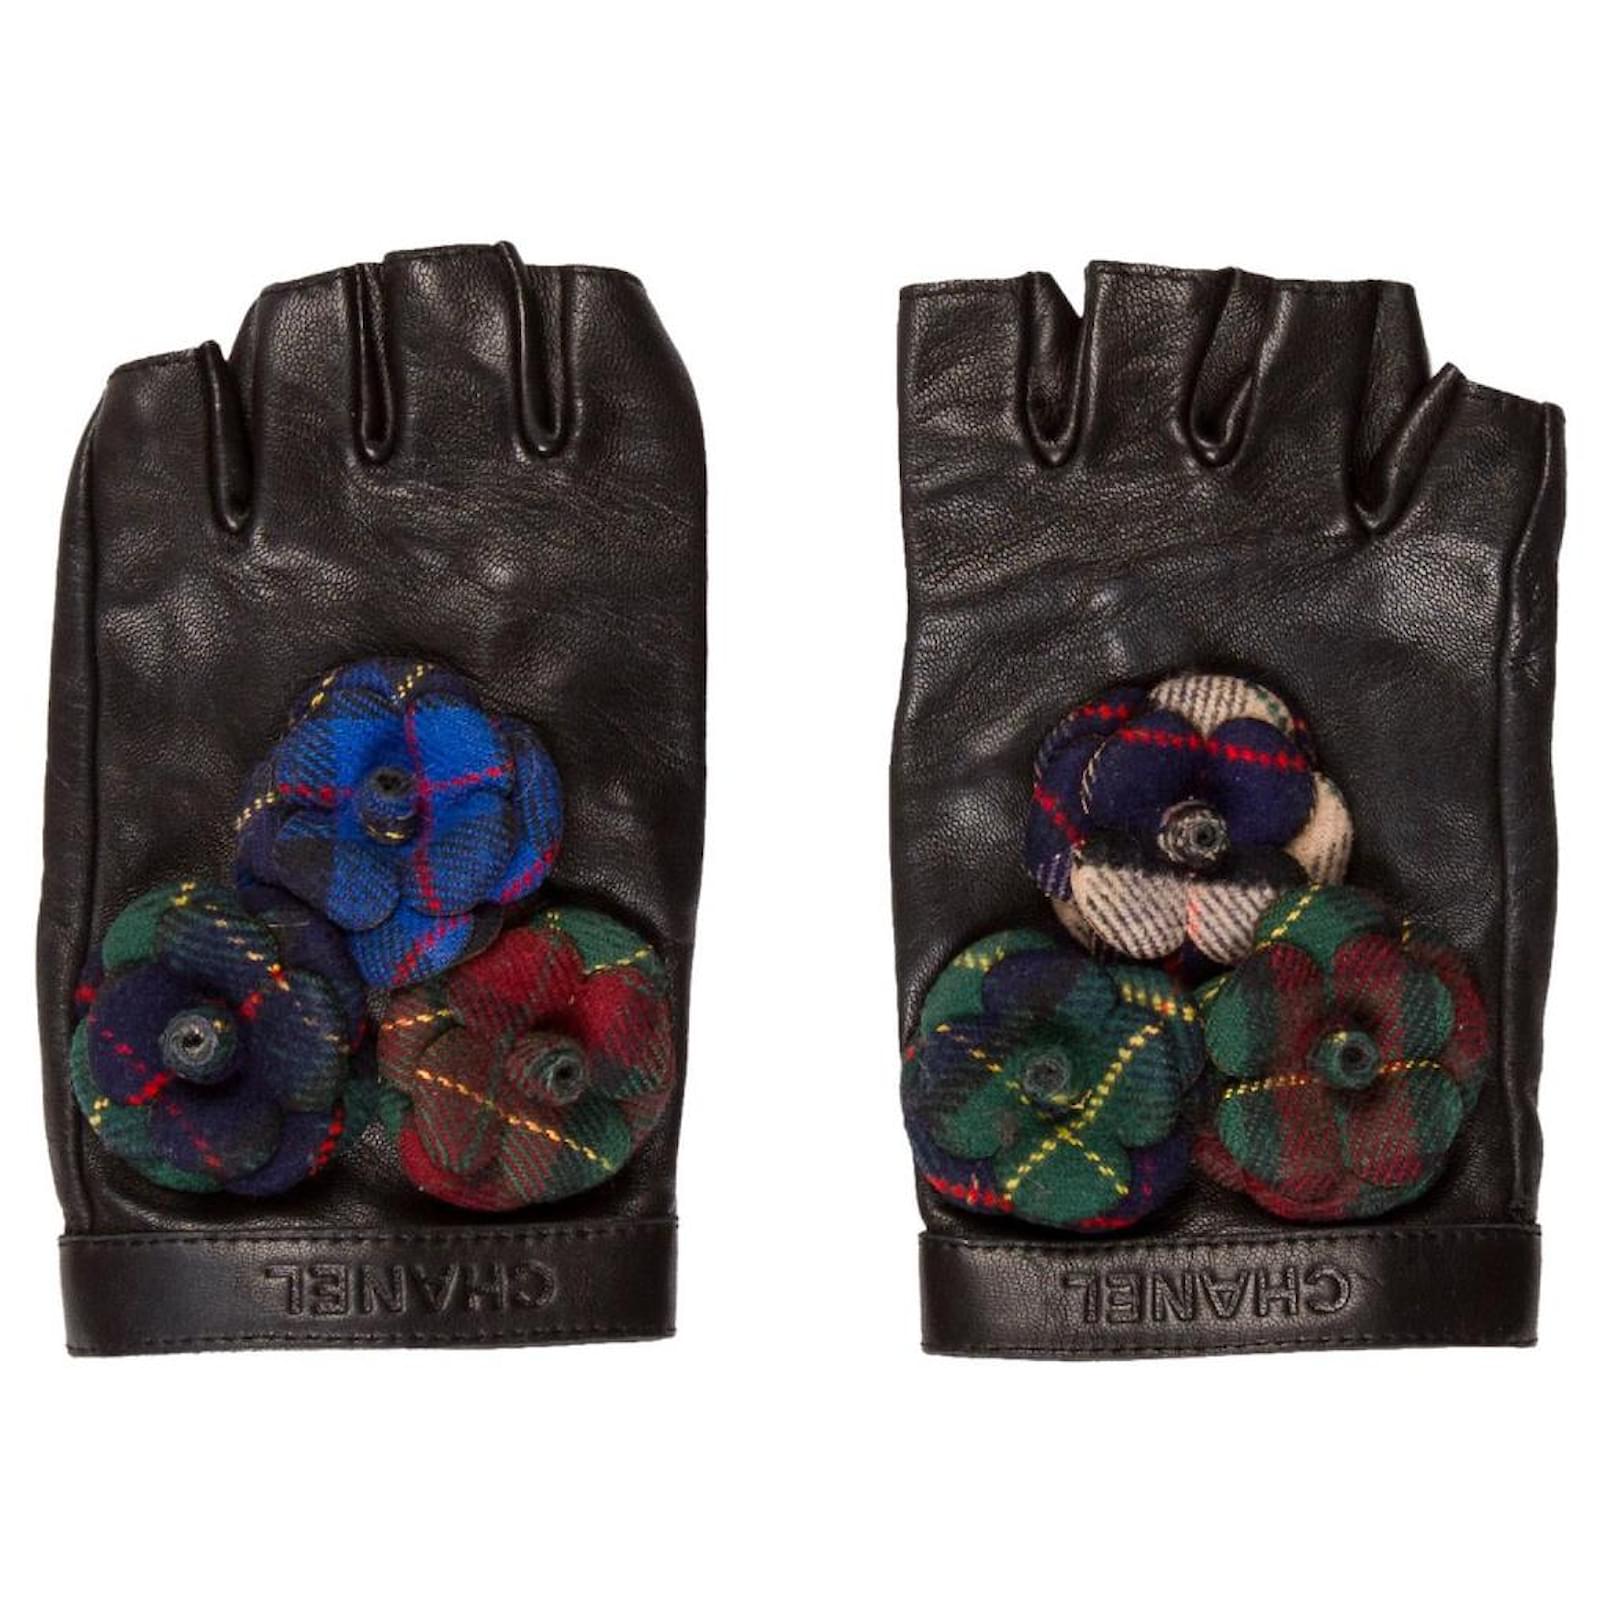 CHANEL Lambskin Sequin Fingerless Gloves 7.5 Black Gold 705131